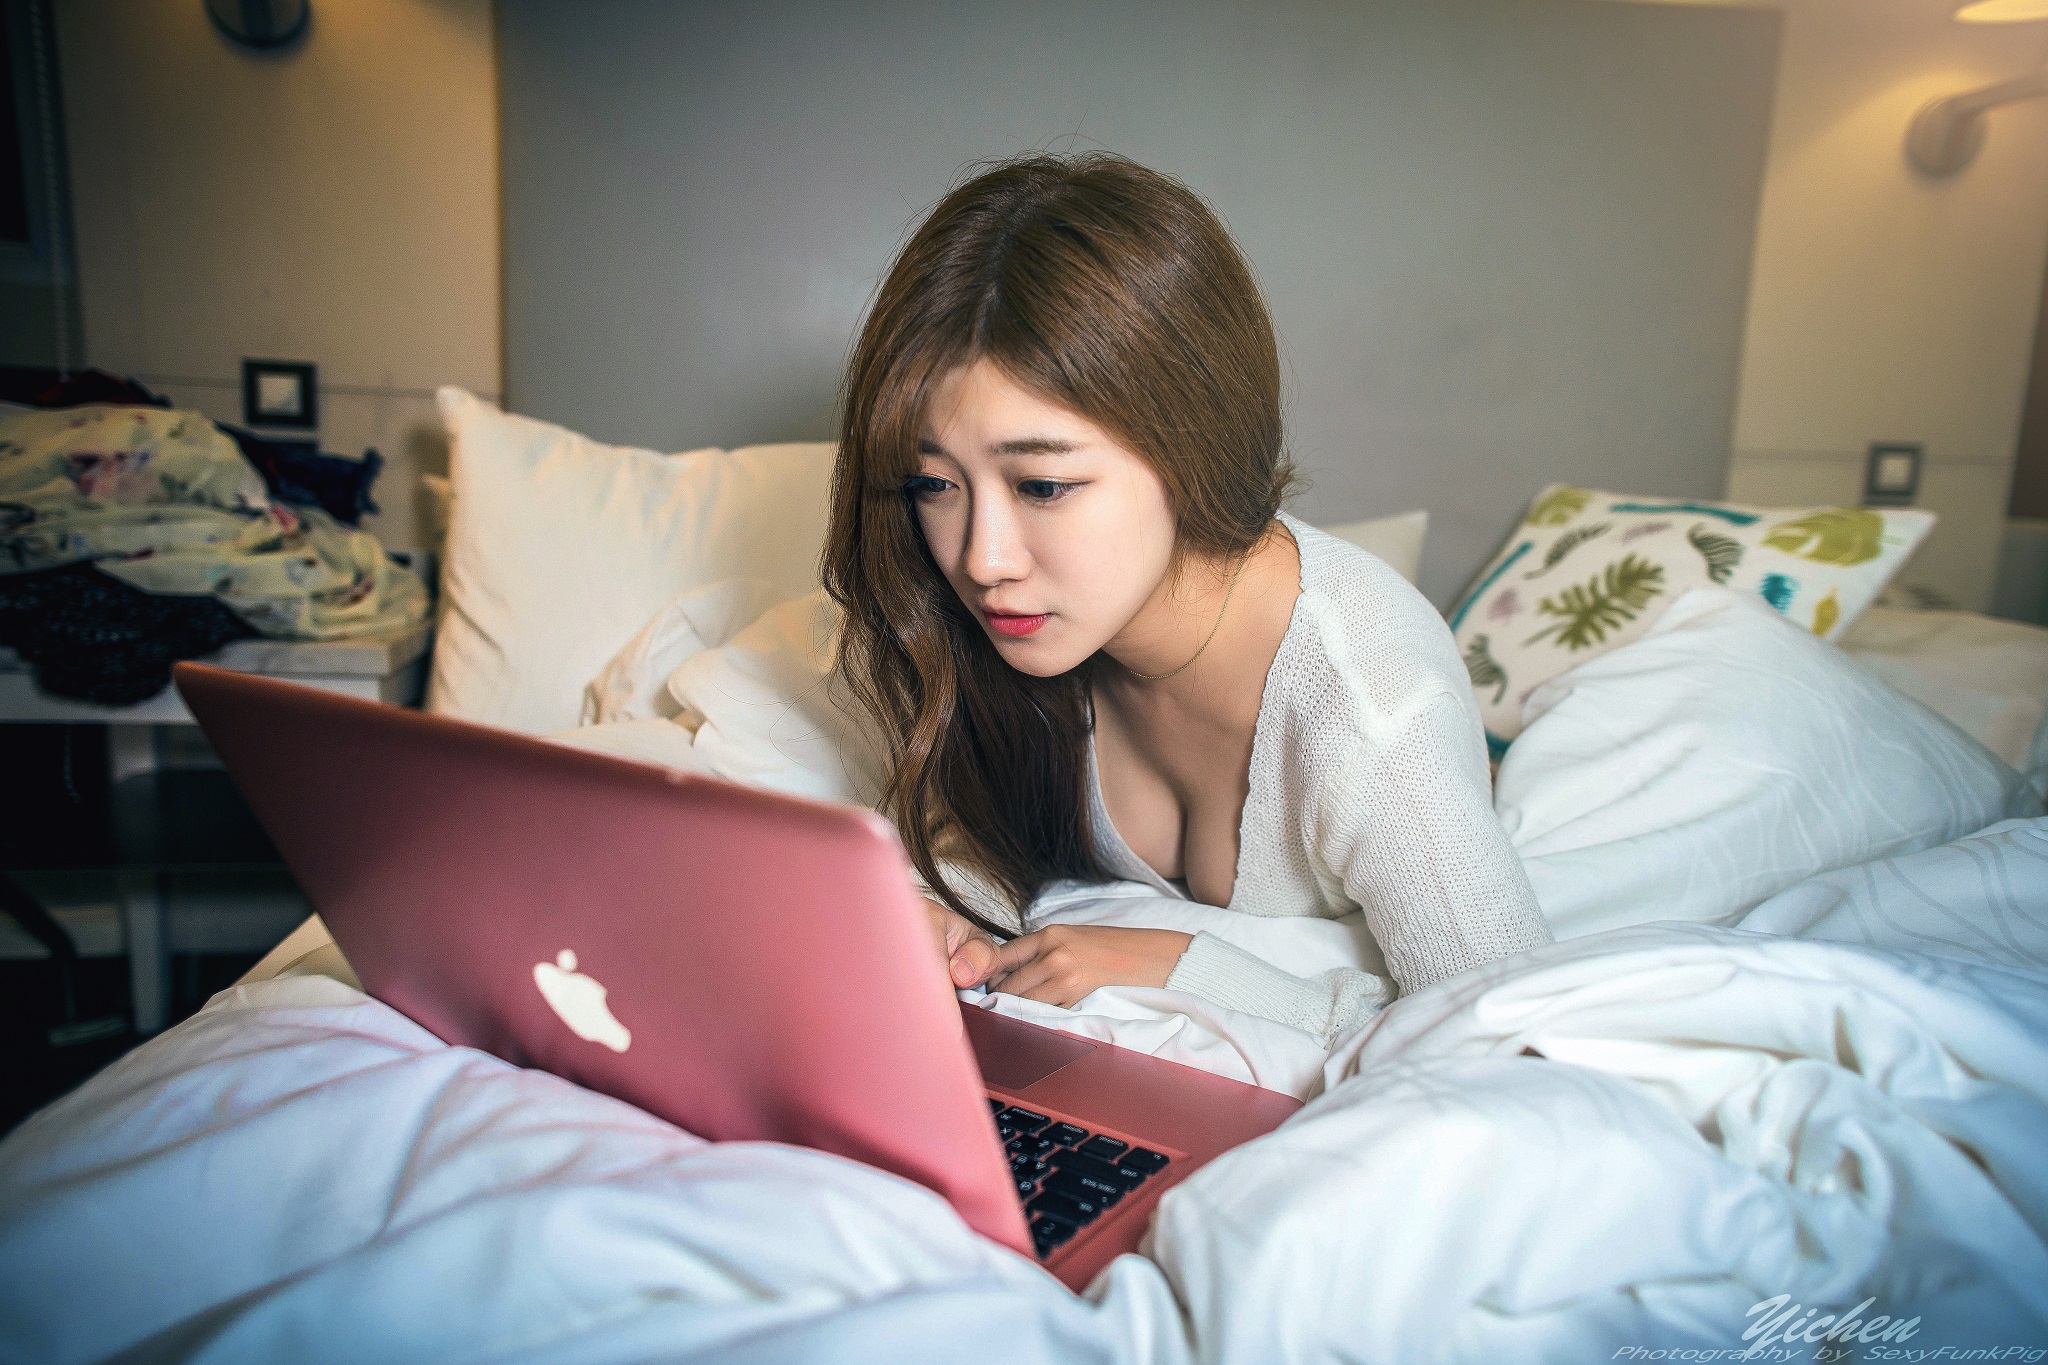 Молодую девушку перед камерой. Девушка с ноутбуком. Девушка с ноутбуком на кровати. Ноутбук на кровати. Девочки в кровати с ноутбуком.